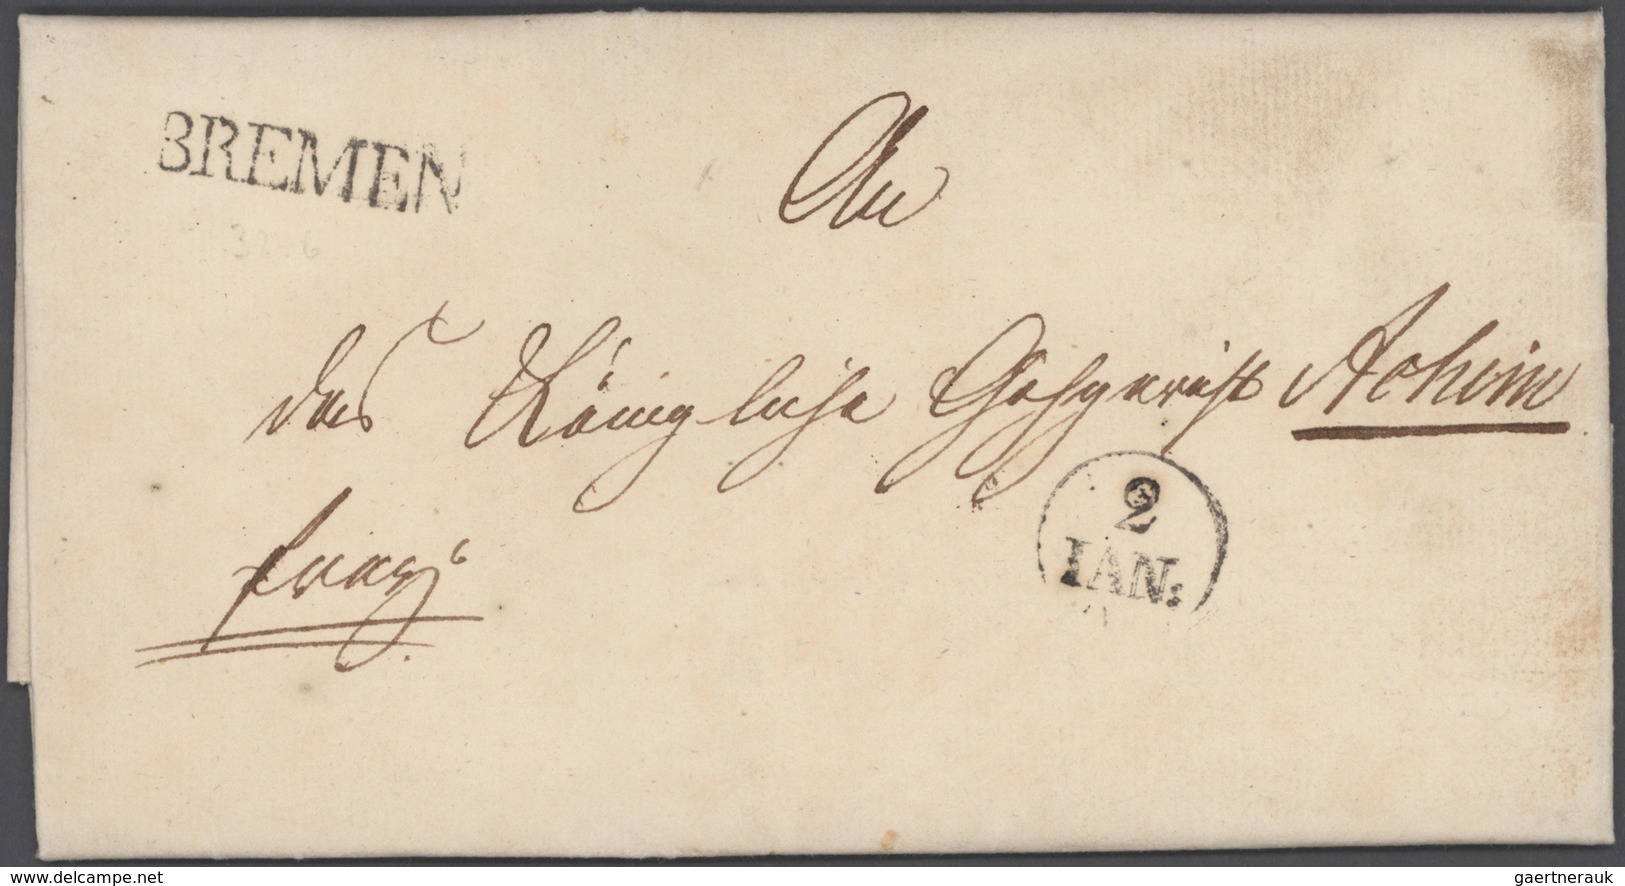 Heimat: Bremen: 1810/1990 (ca.), allumfassende Stempel-Spezial-Sammlung mit insgesamt ca. 1.200 Brie